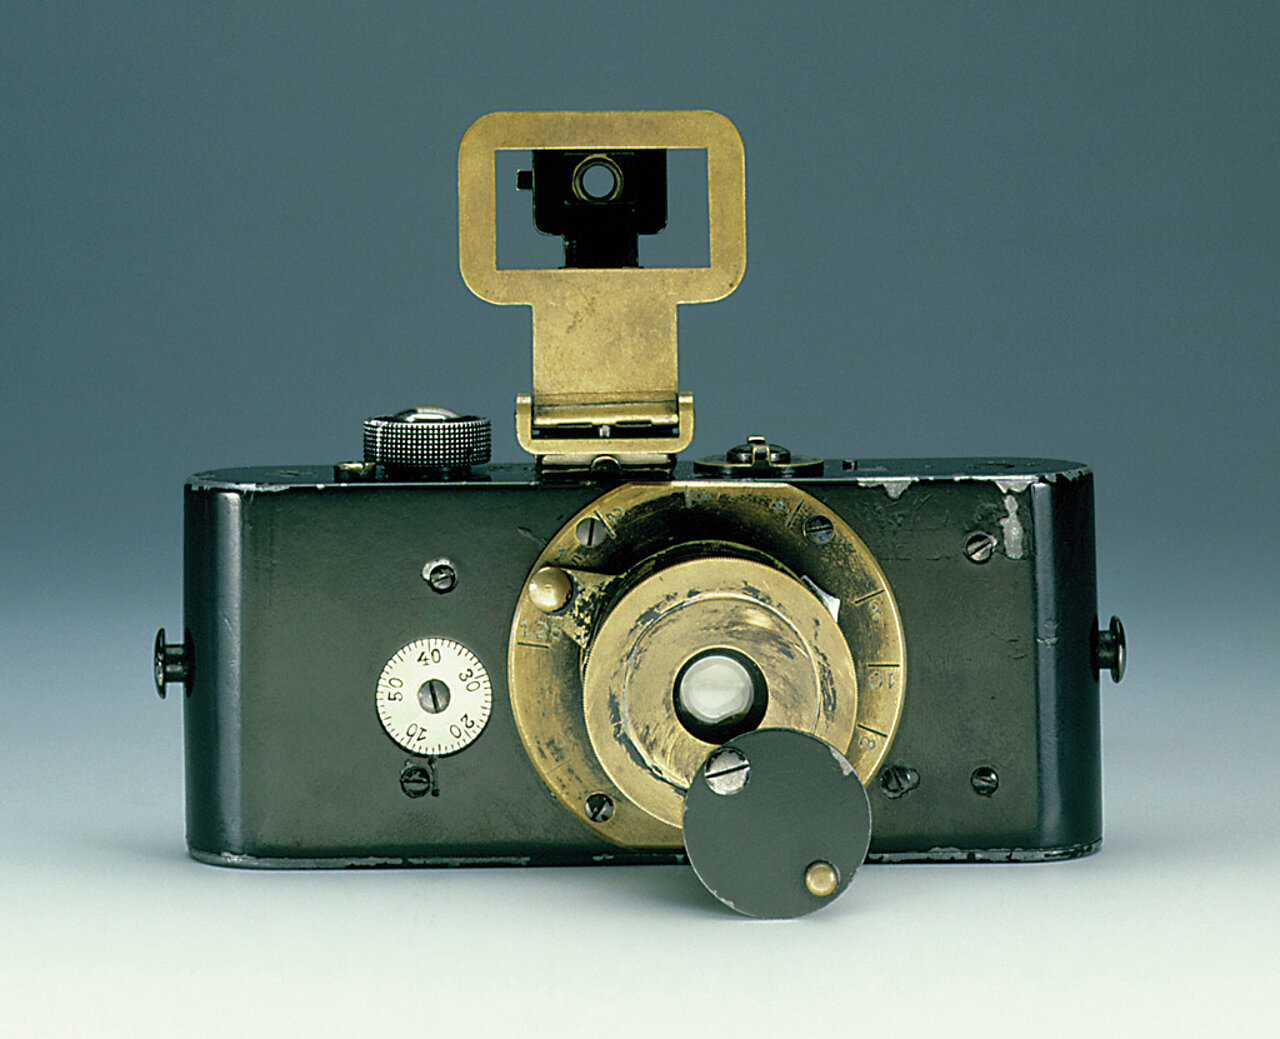 Die erste Kleinbildkamera der Welt, die Ur-Leica, von 1914. Foto: Leica, CC BY-SA 2.0 DE, via Wikimedia Commons; https://upload.wikimedia.org/wikipedia/commons/f/f9/Ur_Leica.jpg